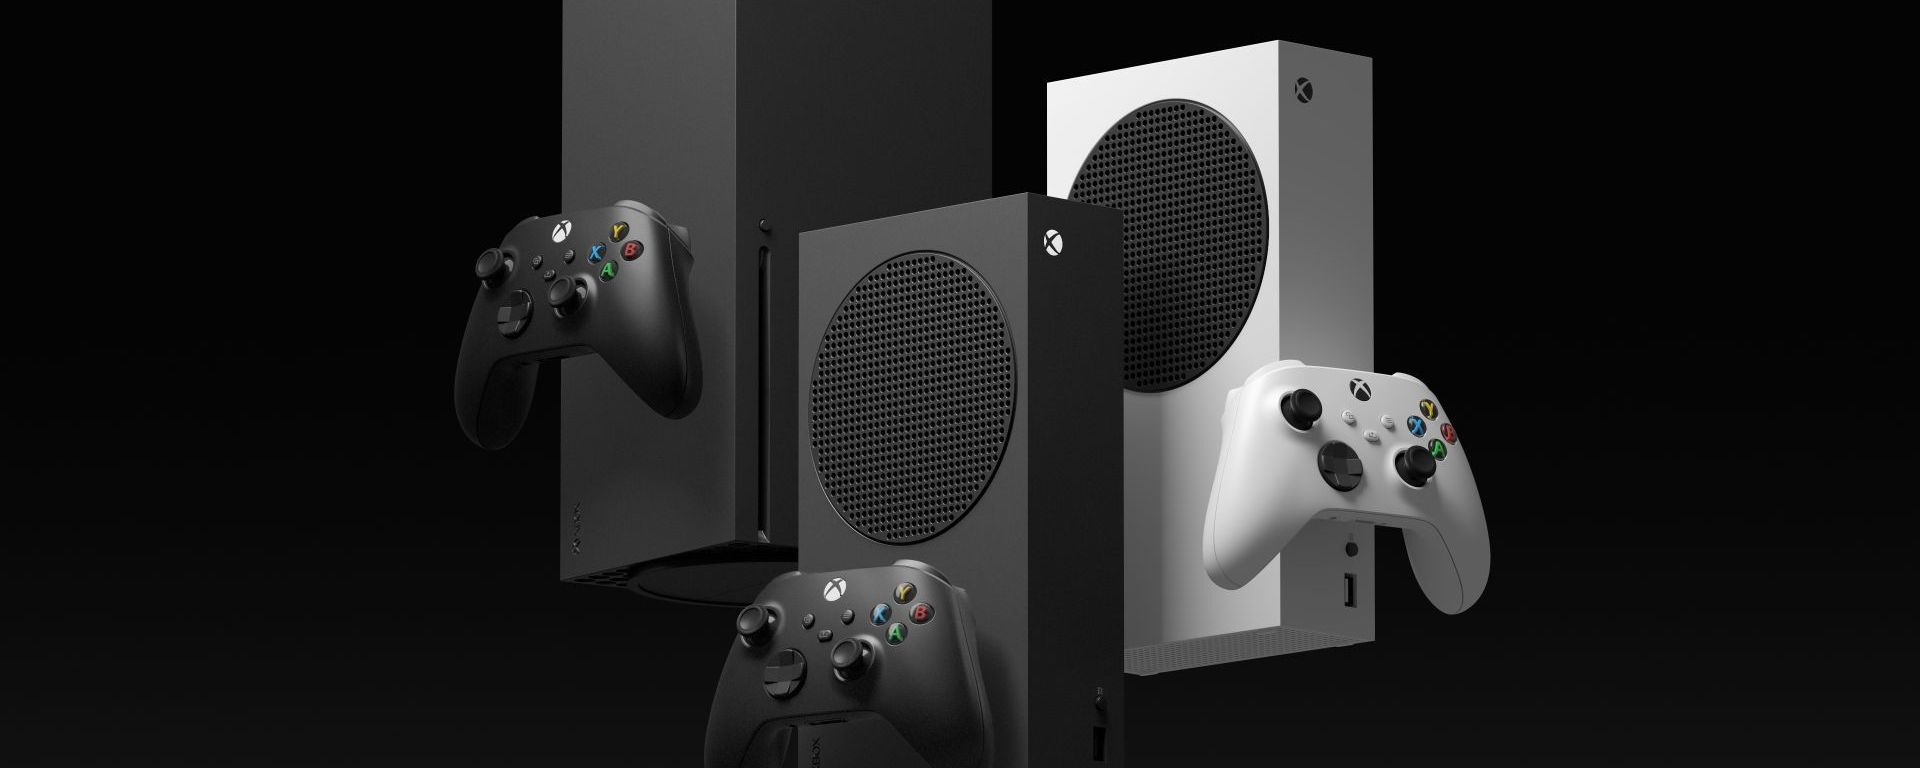 Xbox Series S de 1TB: fecha de lanzamiento y precio en Colombia – Andrenoob